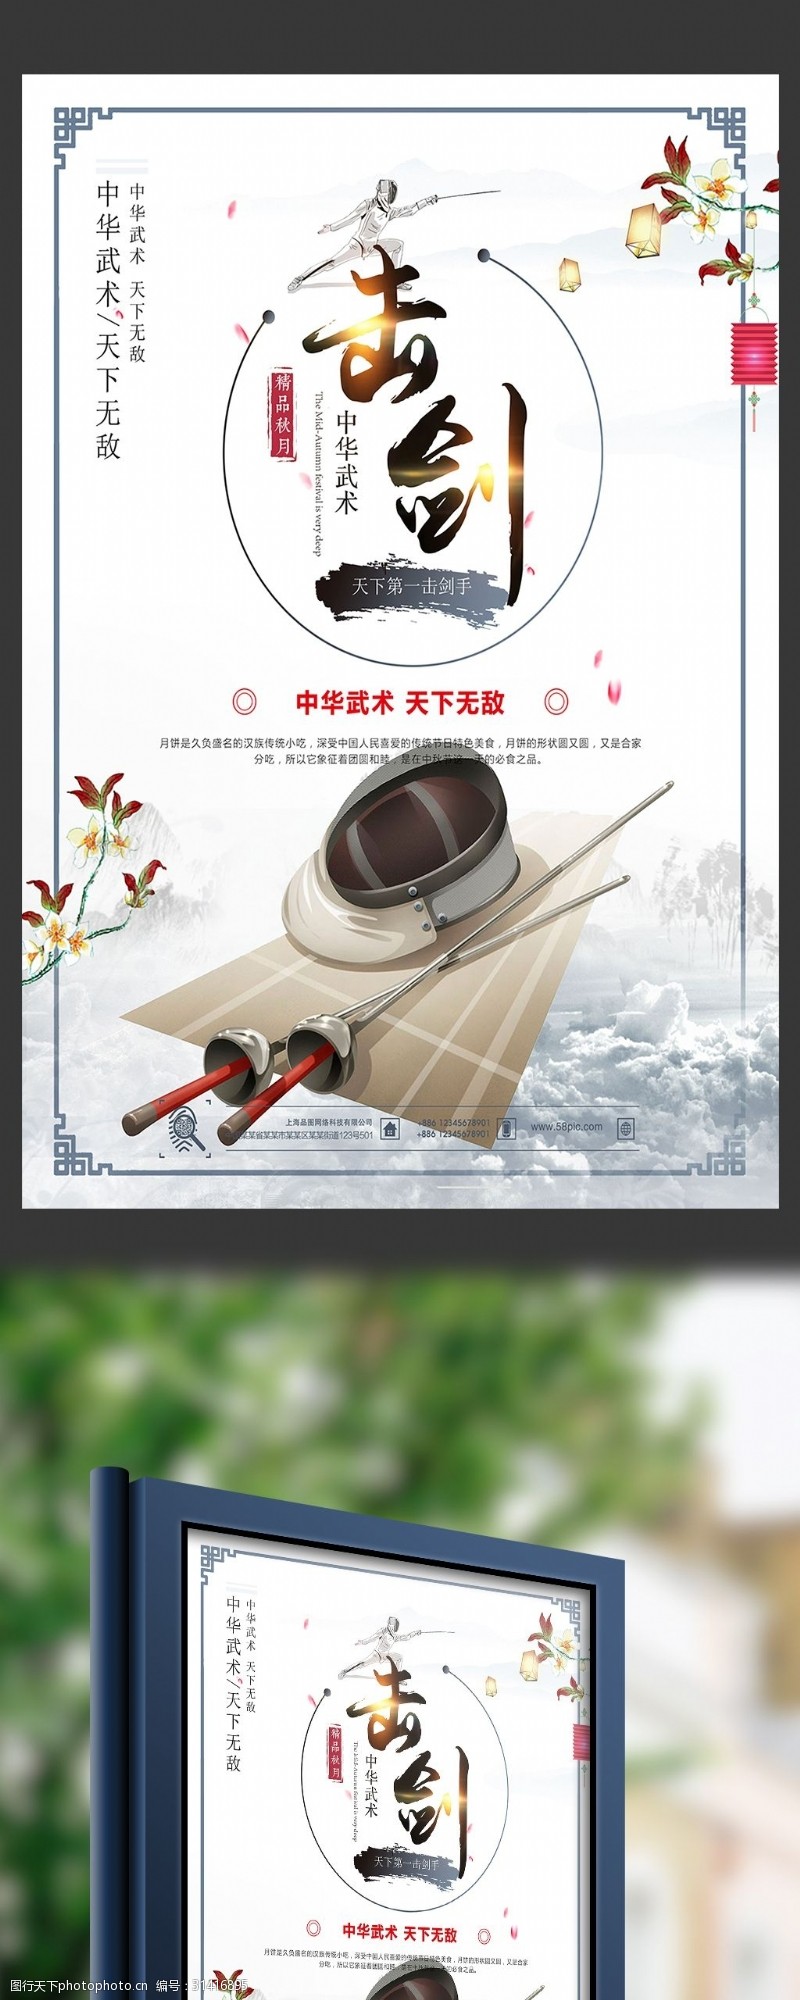 击剑运动古典水墨中国风中华武术击剑宣传海报设计